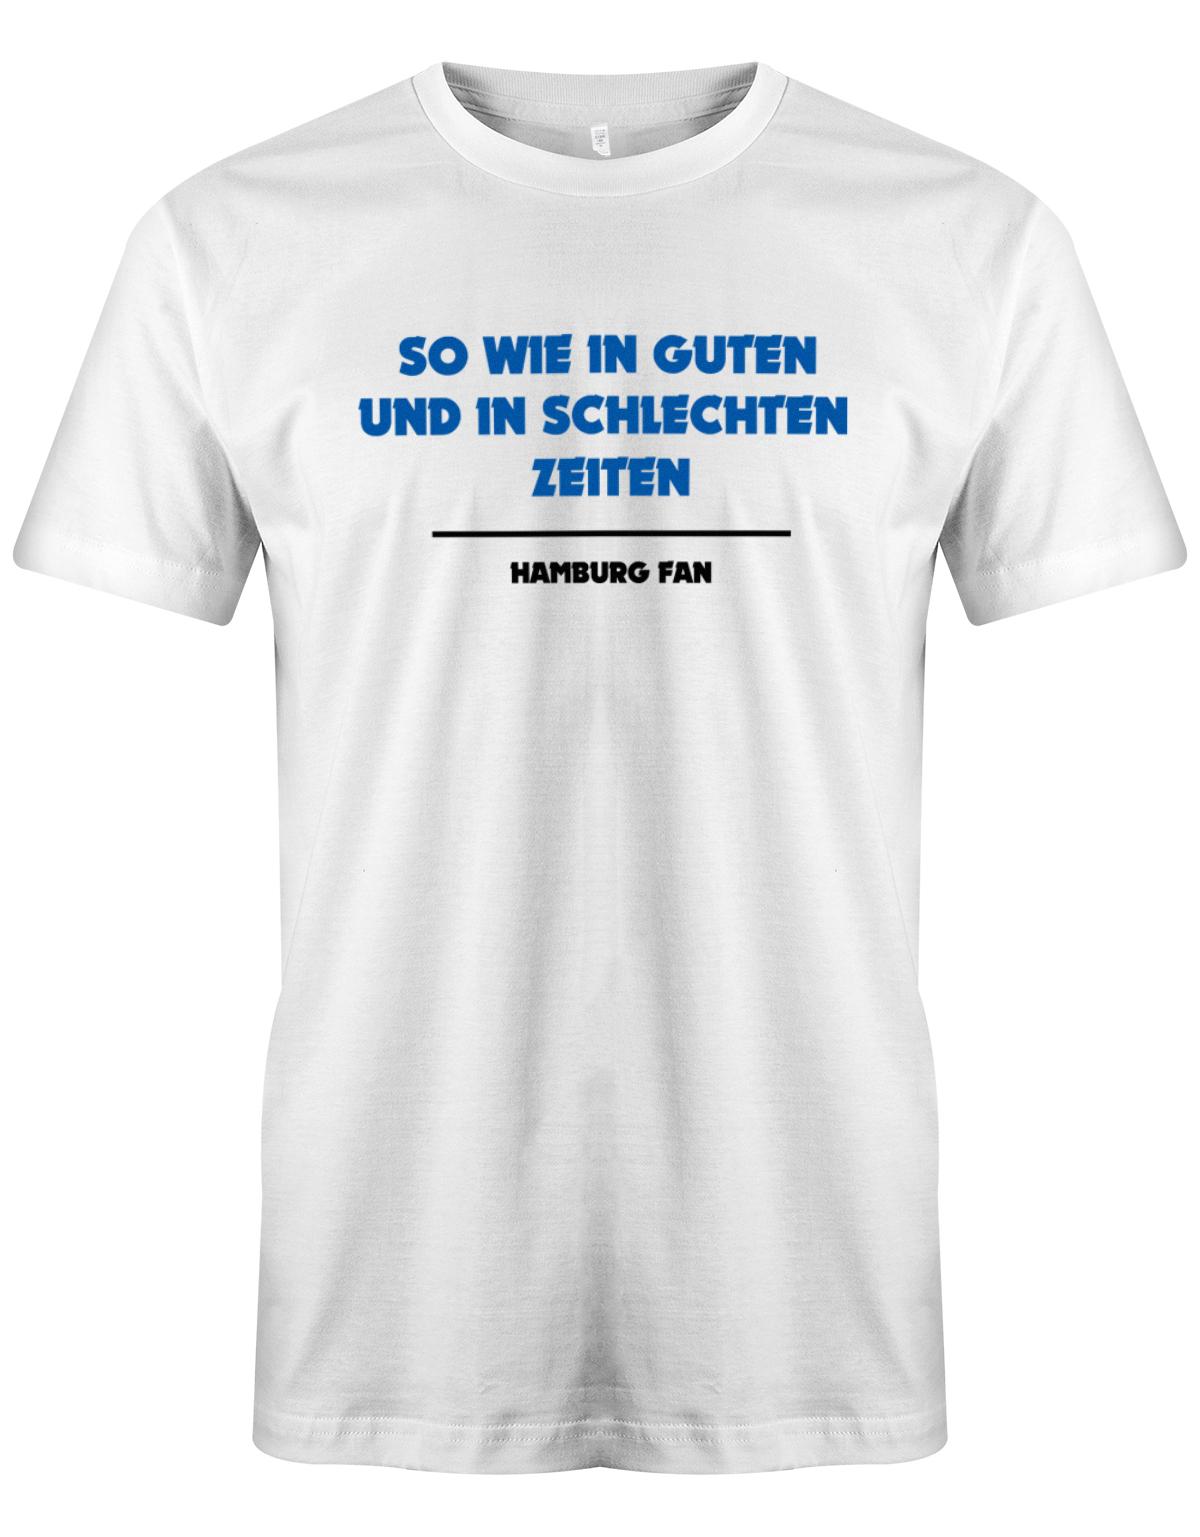 So-wie-in-guten-udn-in-schlechten-Zeiten-Hamburg-fan-Hamburg-shirt-Weiss